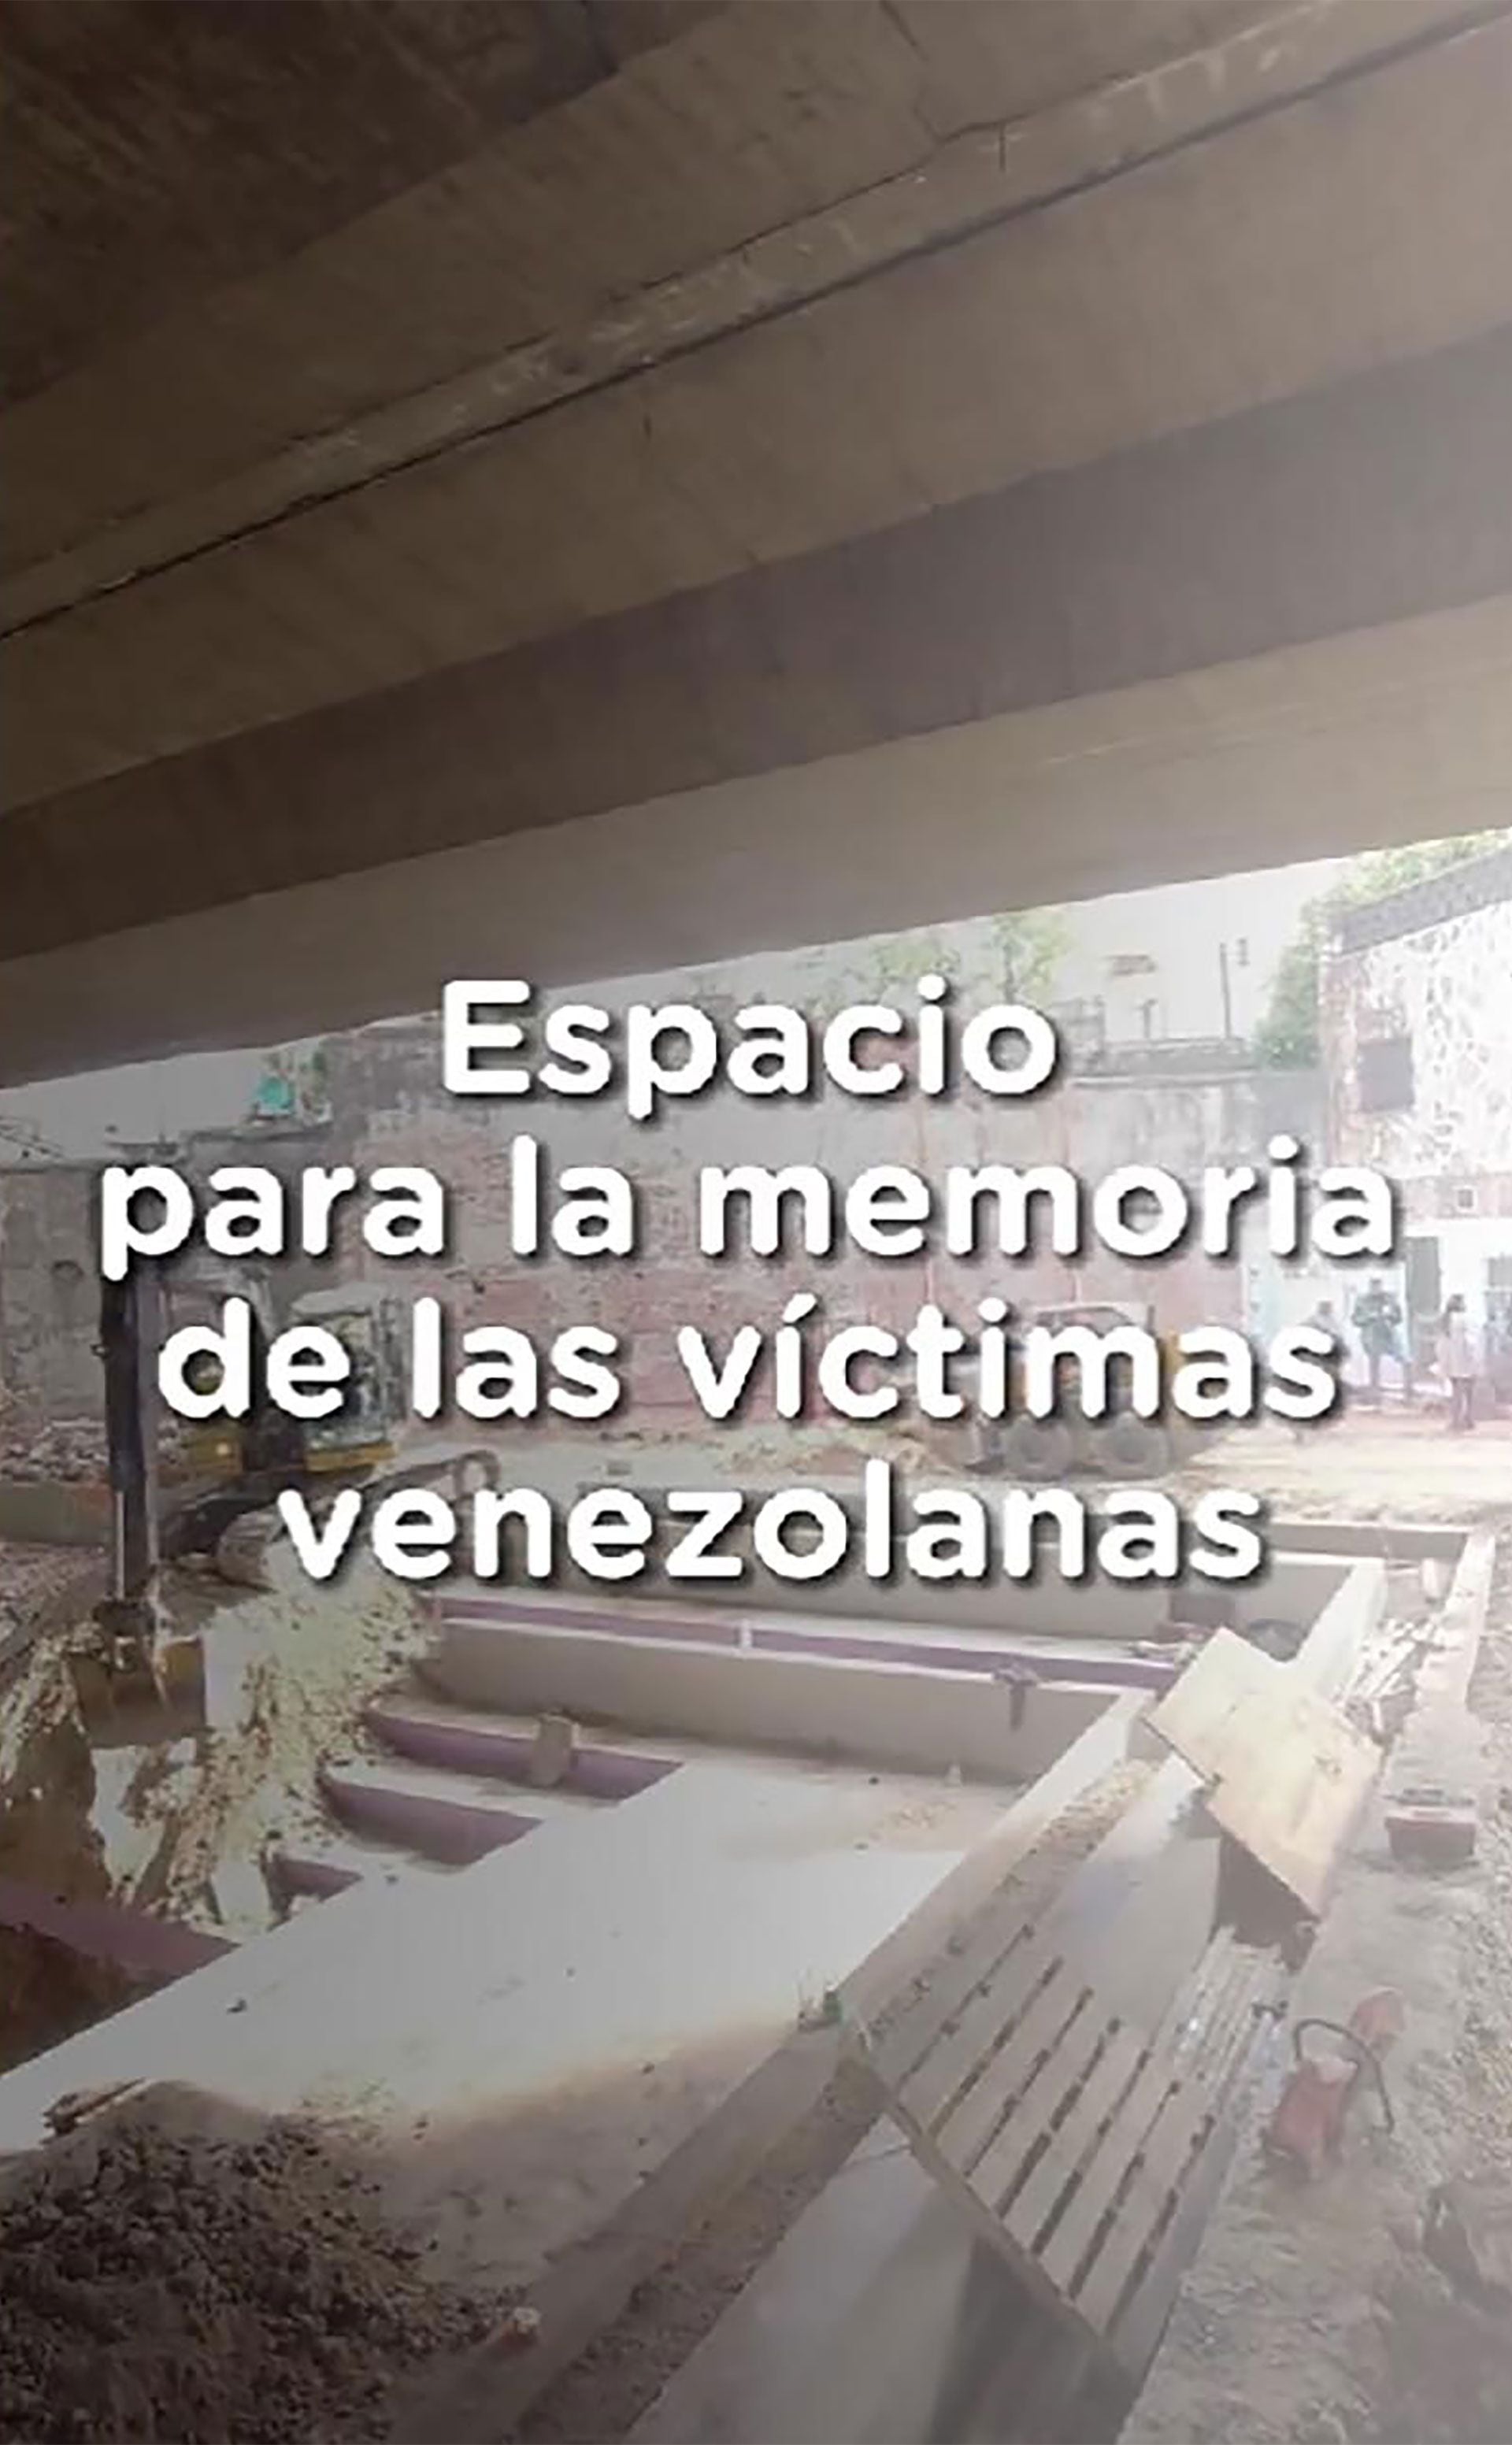 Este mes se inaugurará en Parque Chacabuco un mural para homenajear a las víctimas de la represión en Venezuela